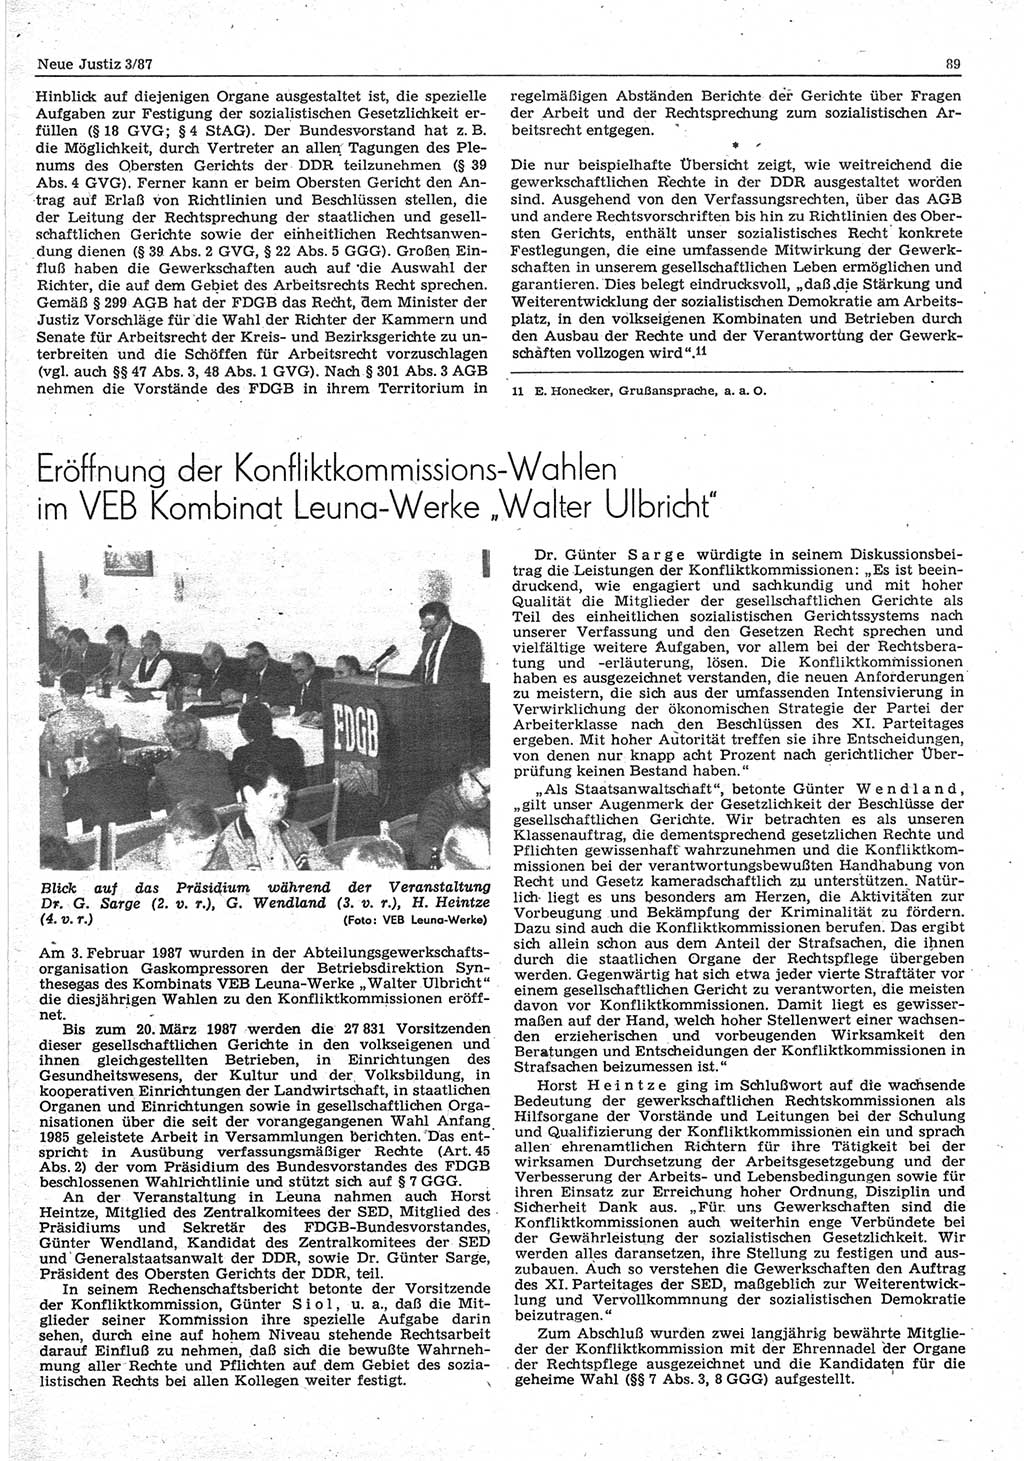 Neue Justiz (NJ), Zeitschrift für sozialistisches Recht und Gesetzlichkeit [Deutsche Demokratische Republik (DDR)], 41. Jahrgang 1987, Seite 89 (NJ DDR 1987, S. 89)